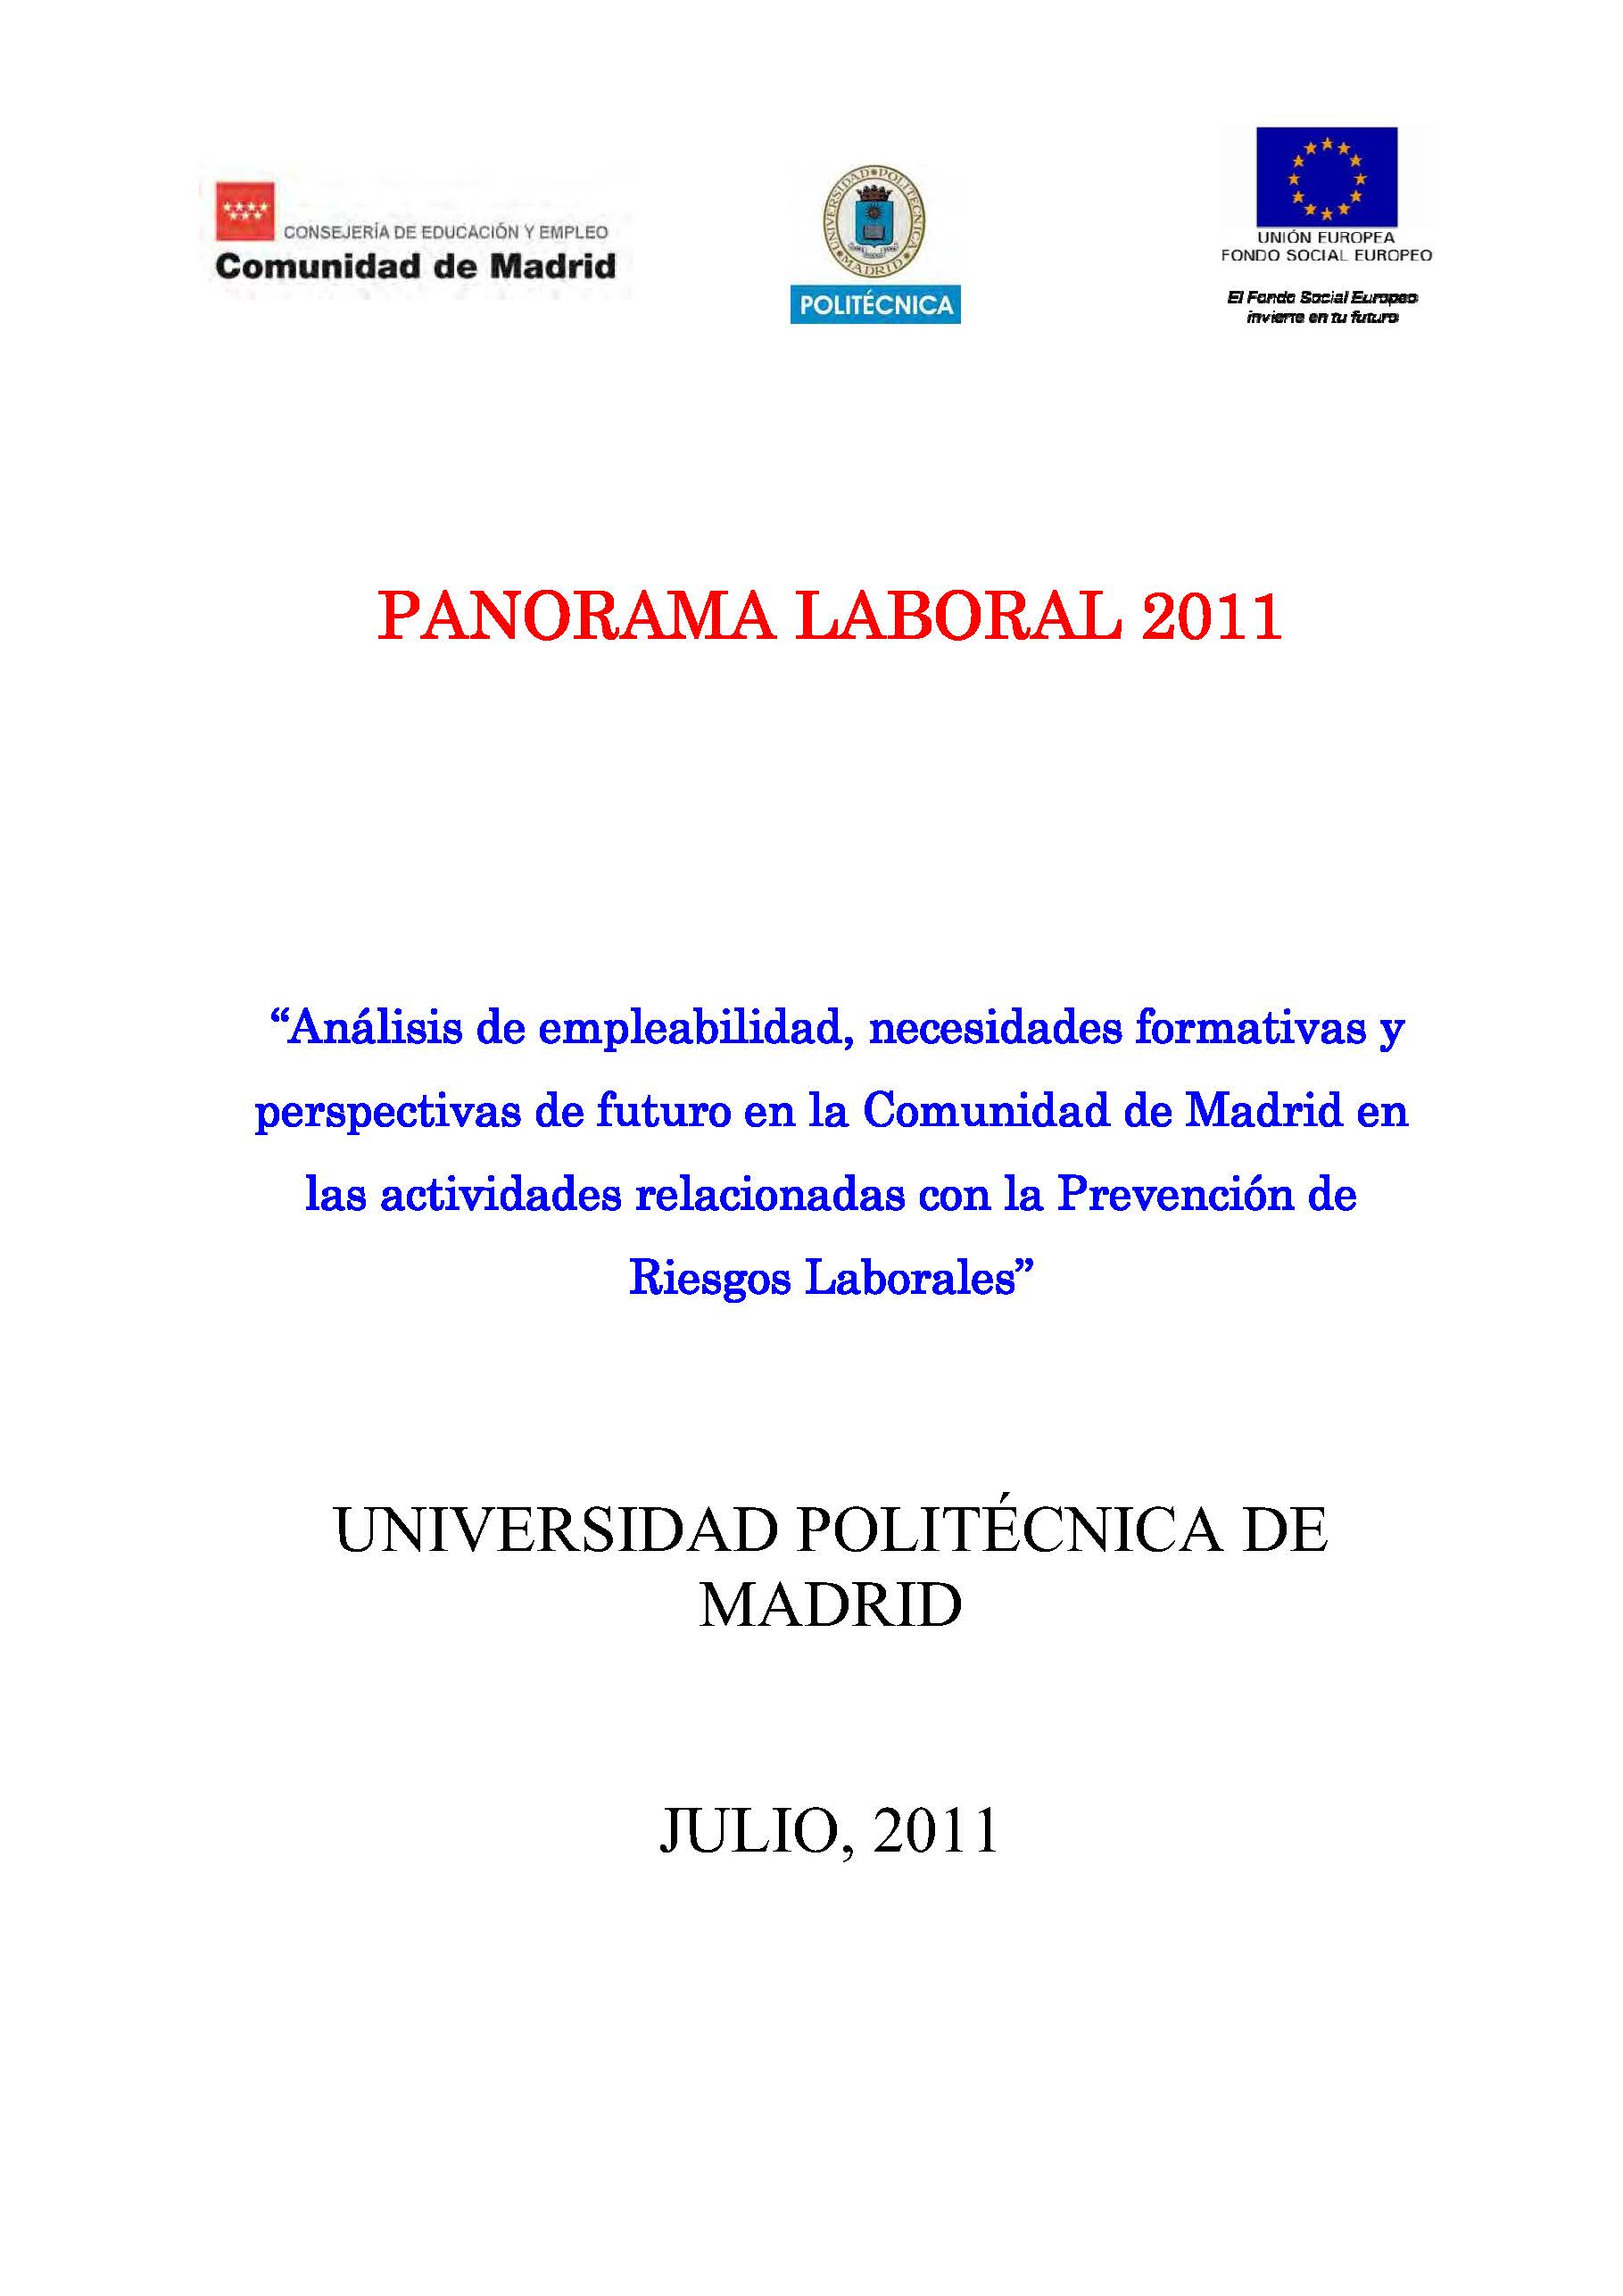 Portada de Panorama Laboral 2011. Análisis de empleabilidad y perspectivas de futuro en la Comunidad de Madrid de las actividades relacionadas con la prevención de riesgos laborales